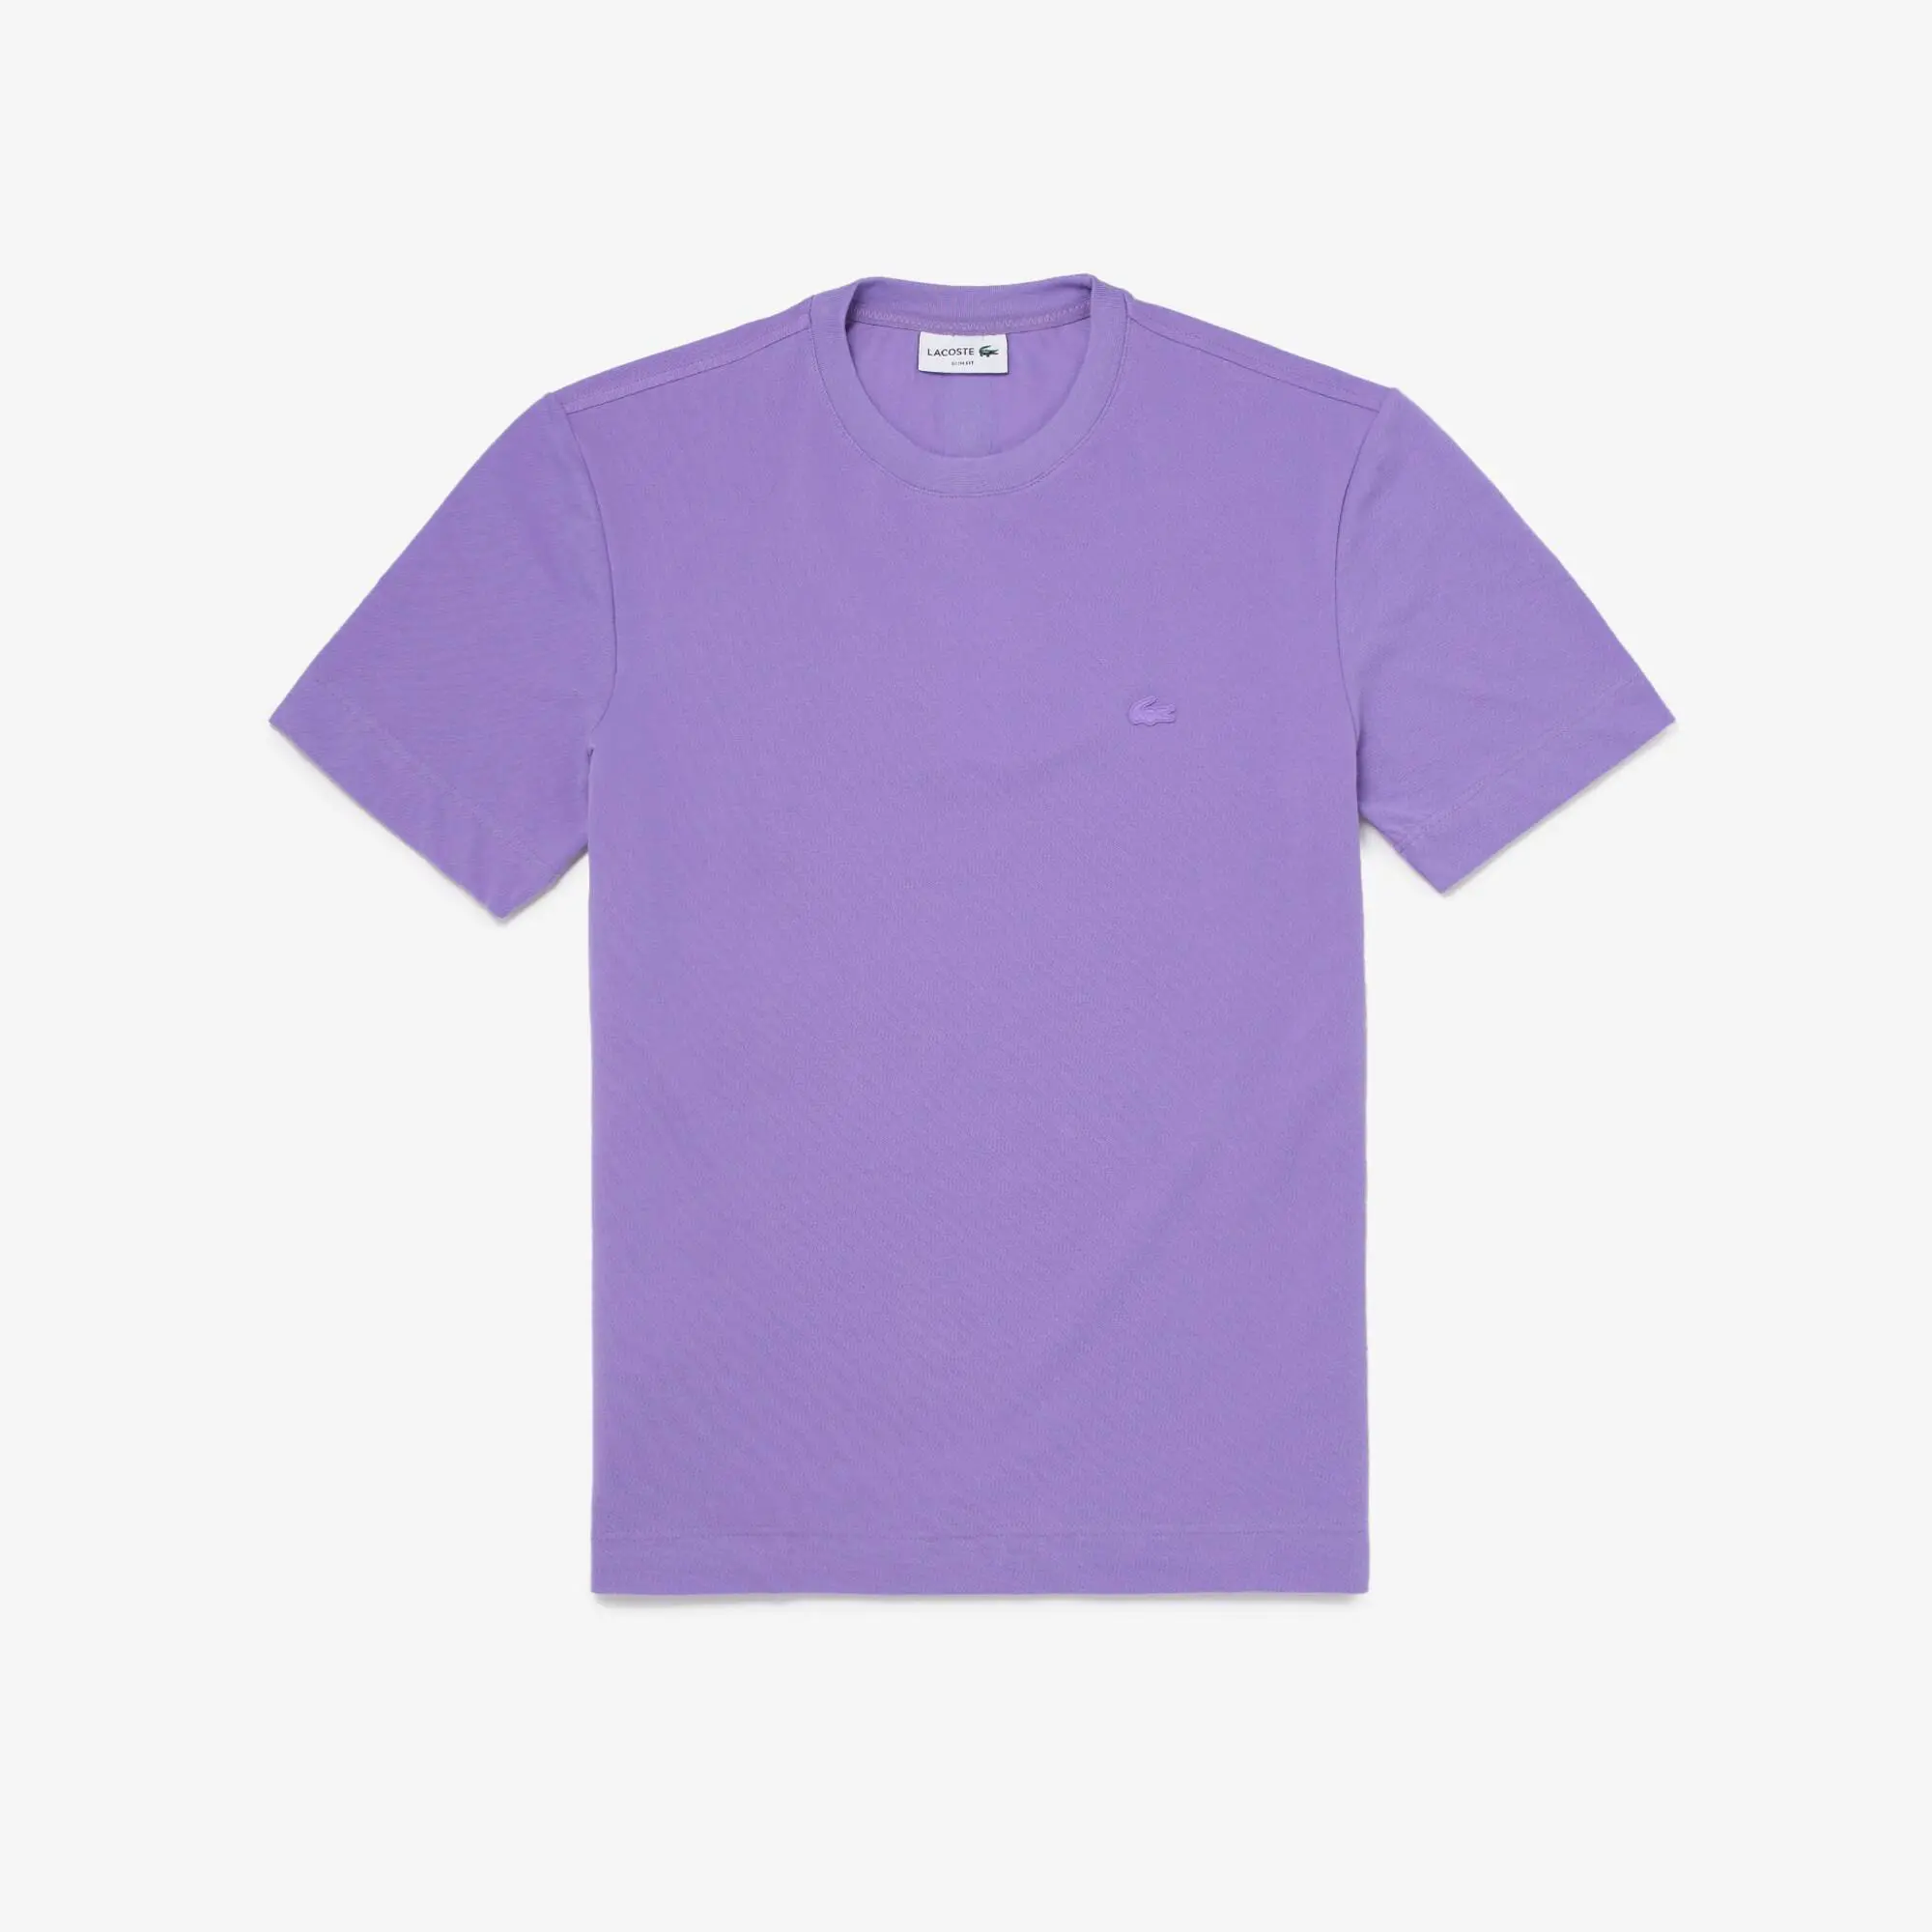 Lacoste Men's Crew Neck Organic Cotton Piqué Blend T-Shirt. 1